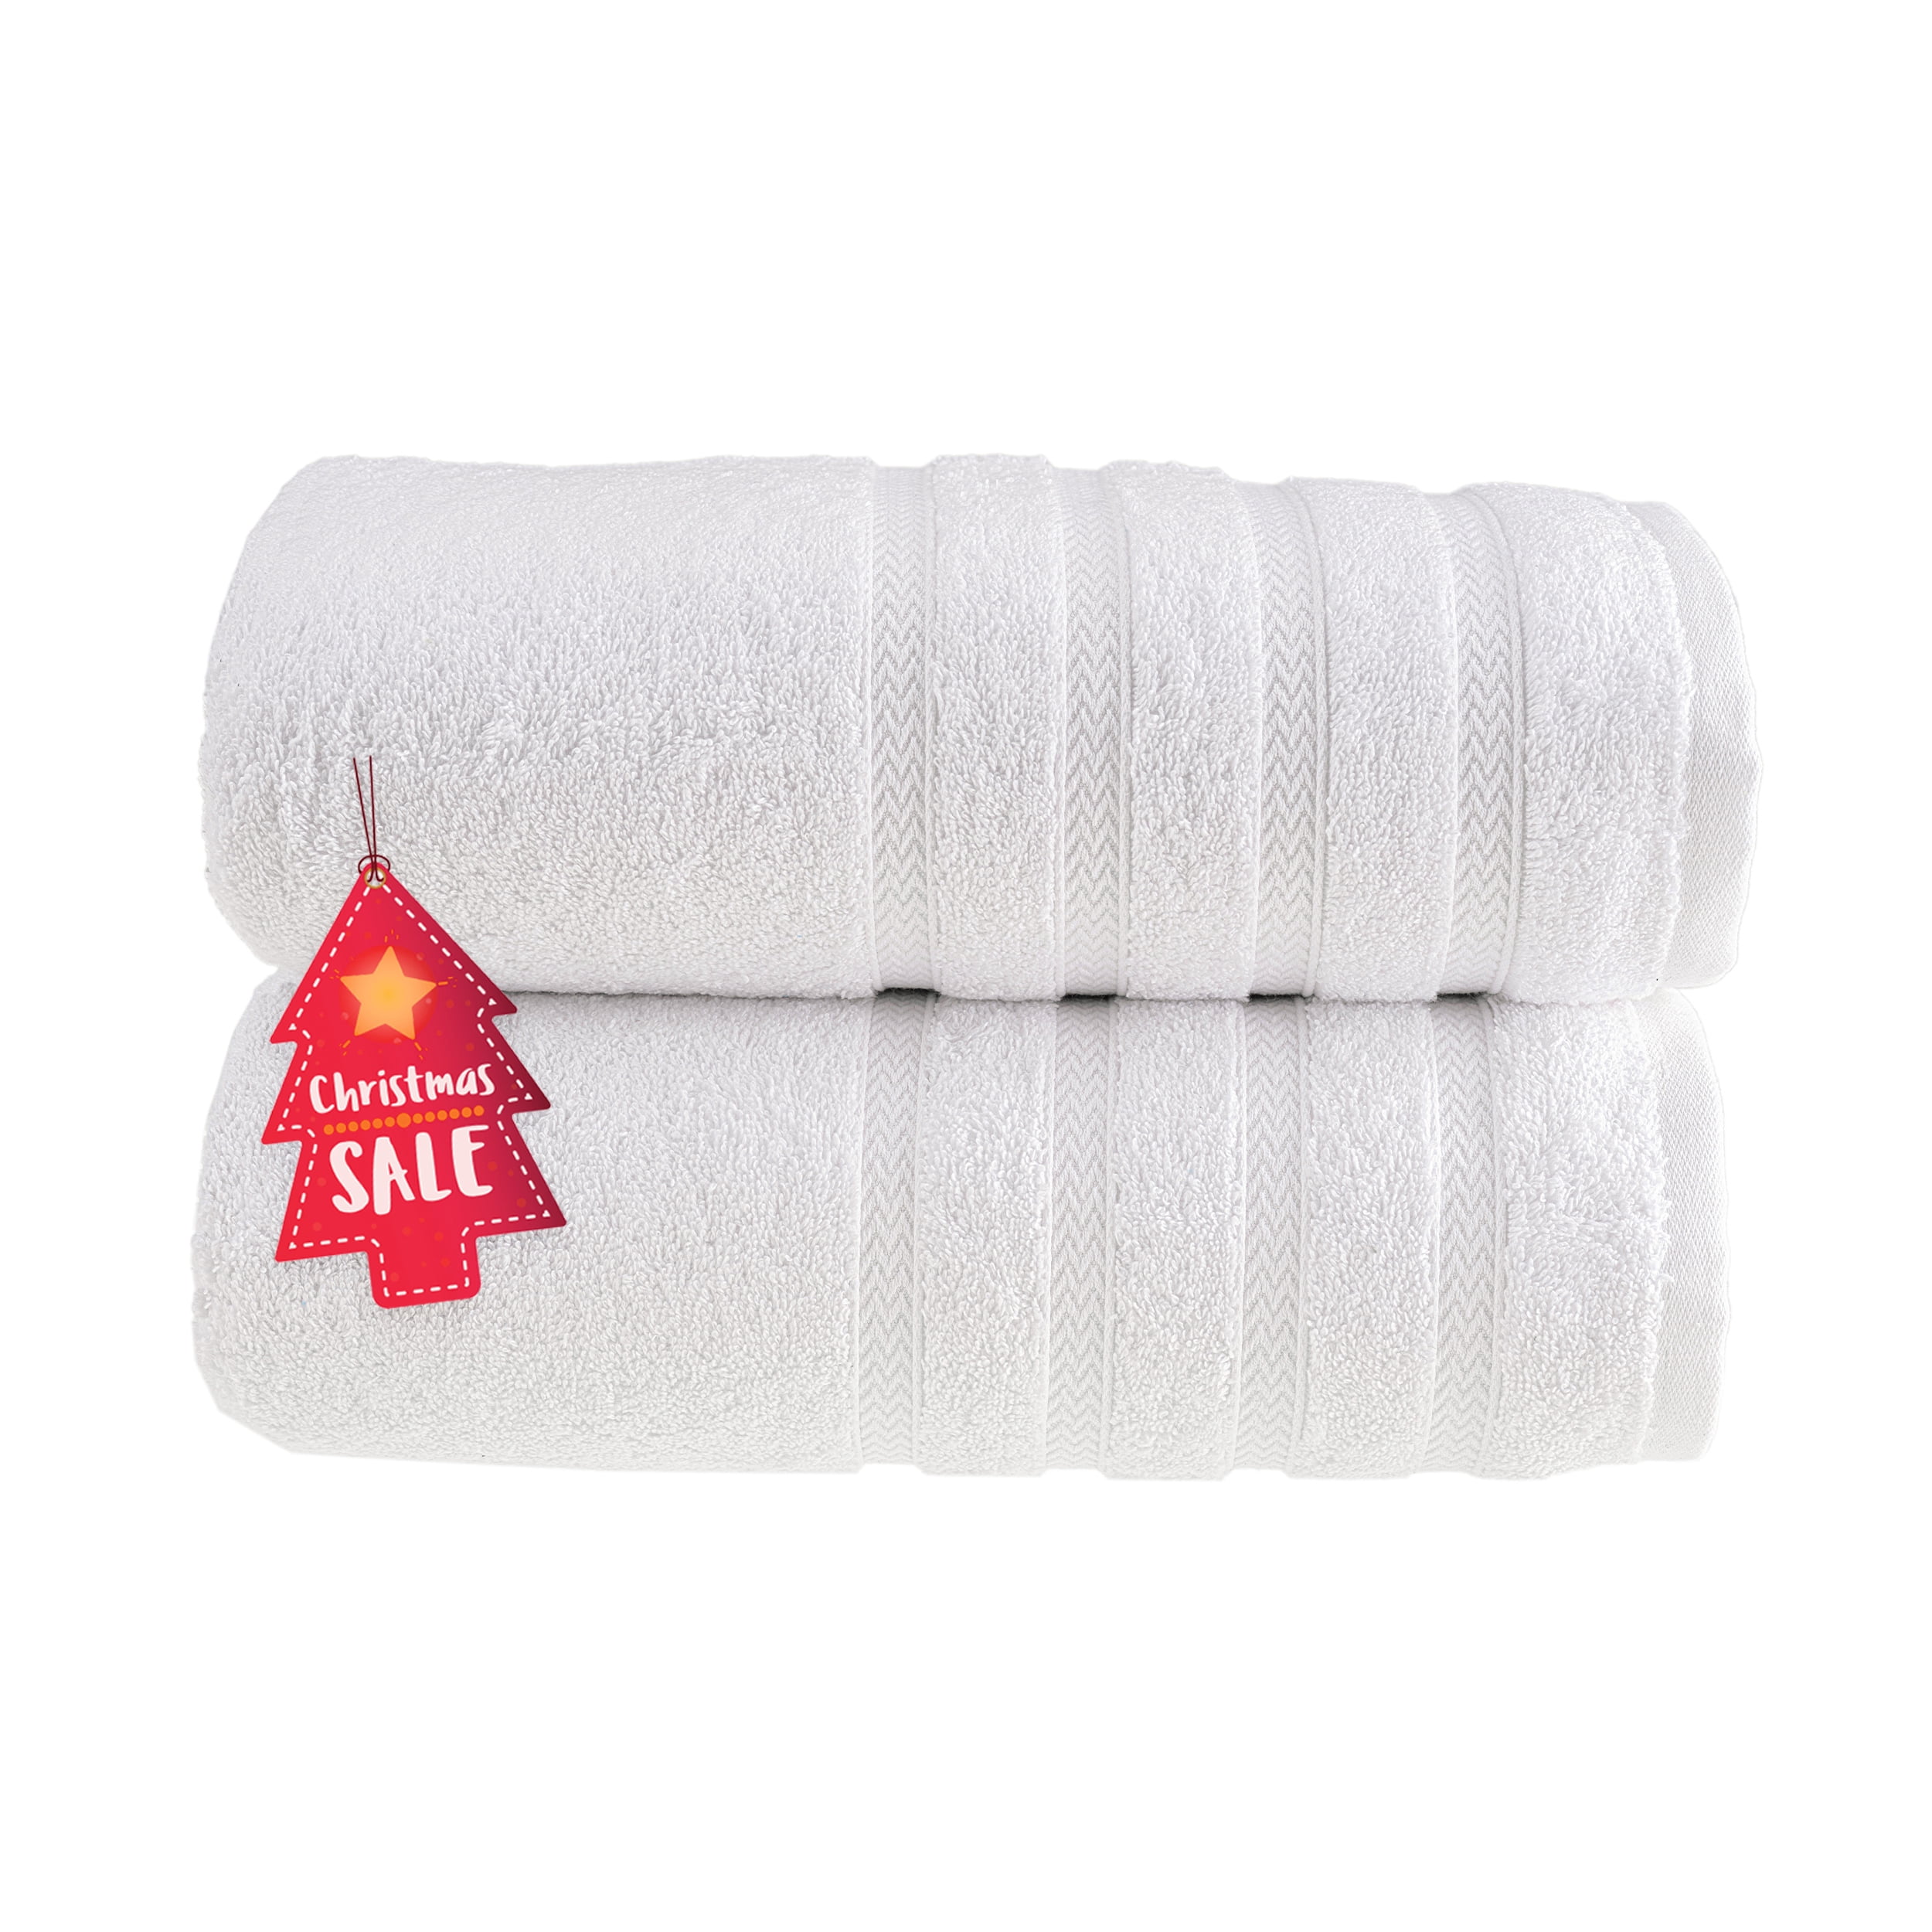 Concierge Collection Turkish Cotton 12-piece Towel Set - 20793947